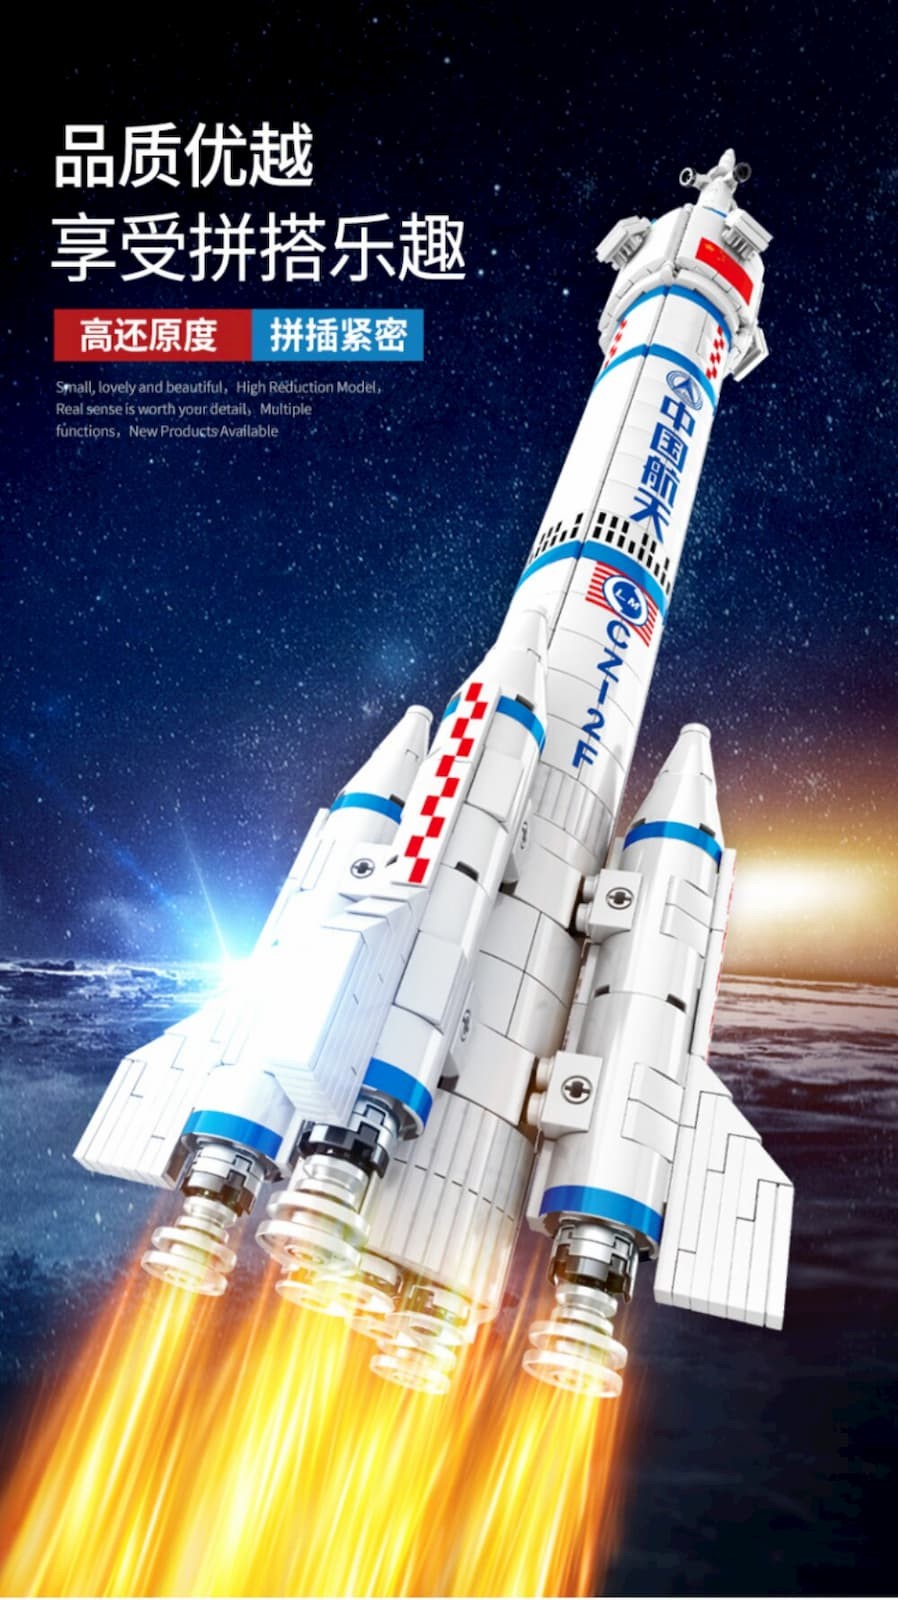 Конструктор Sembo Block «Космическая ракета» 203304 / 904 детали